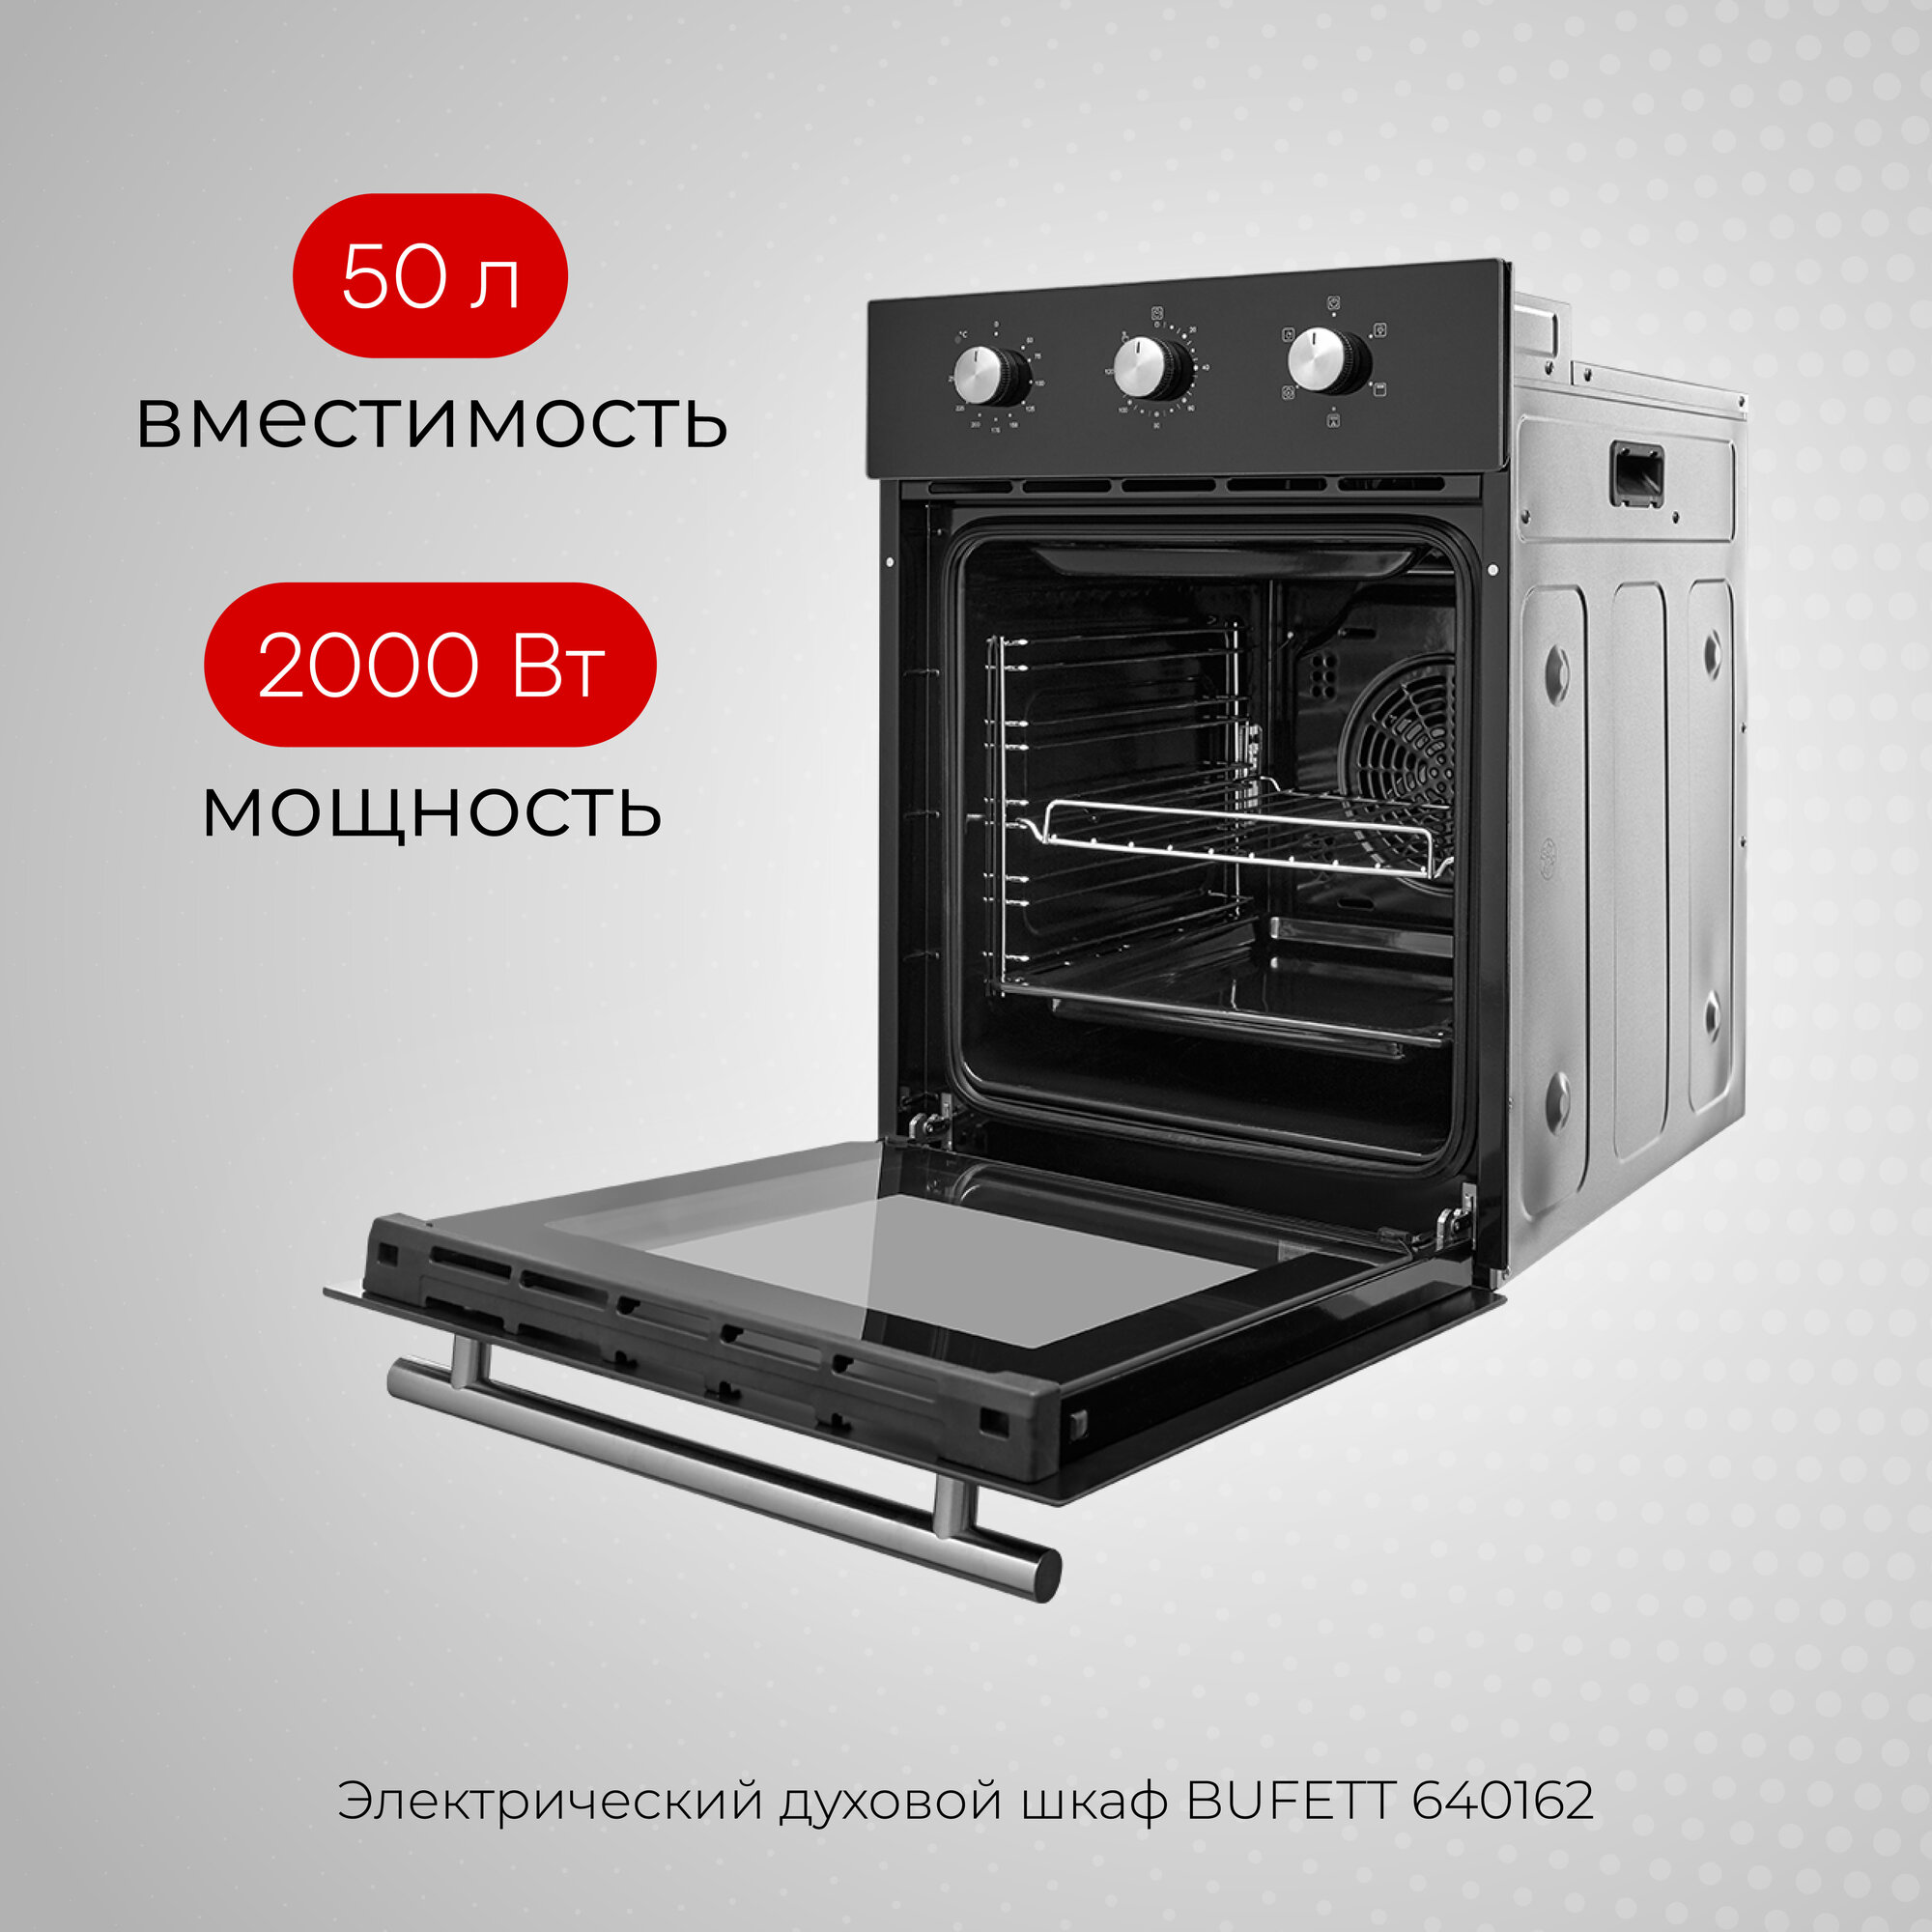 Духовой шкаф электрический встраиваемый 45см с конвекцией BUFETT 640162, 50л, 2000 Вт